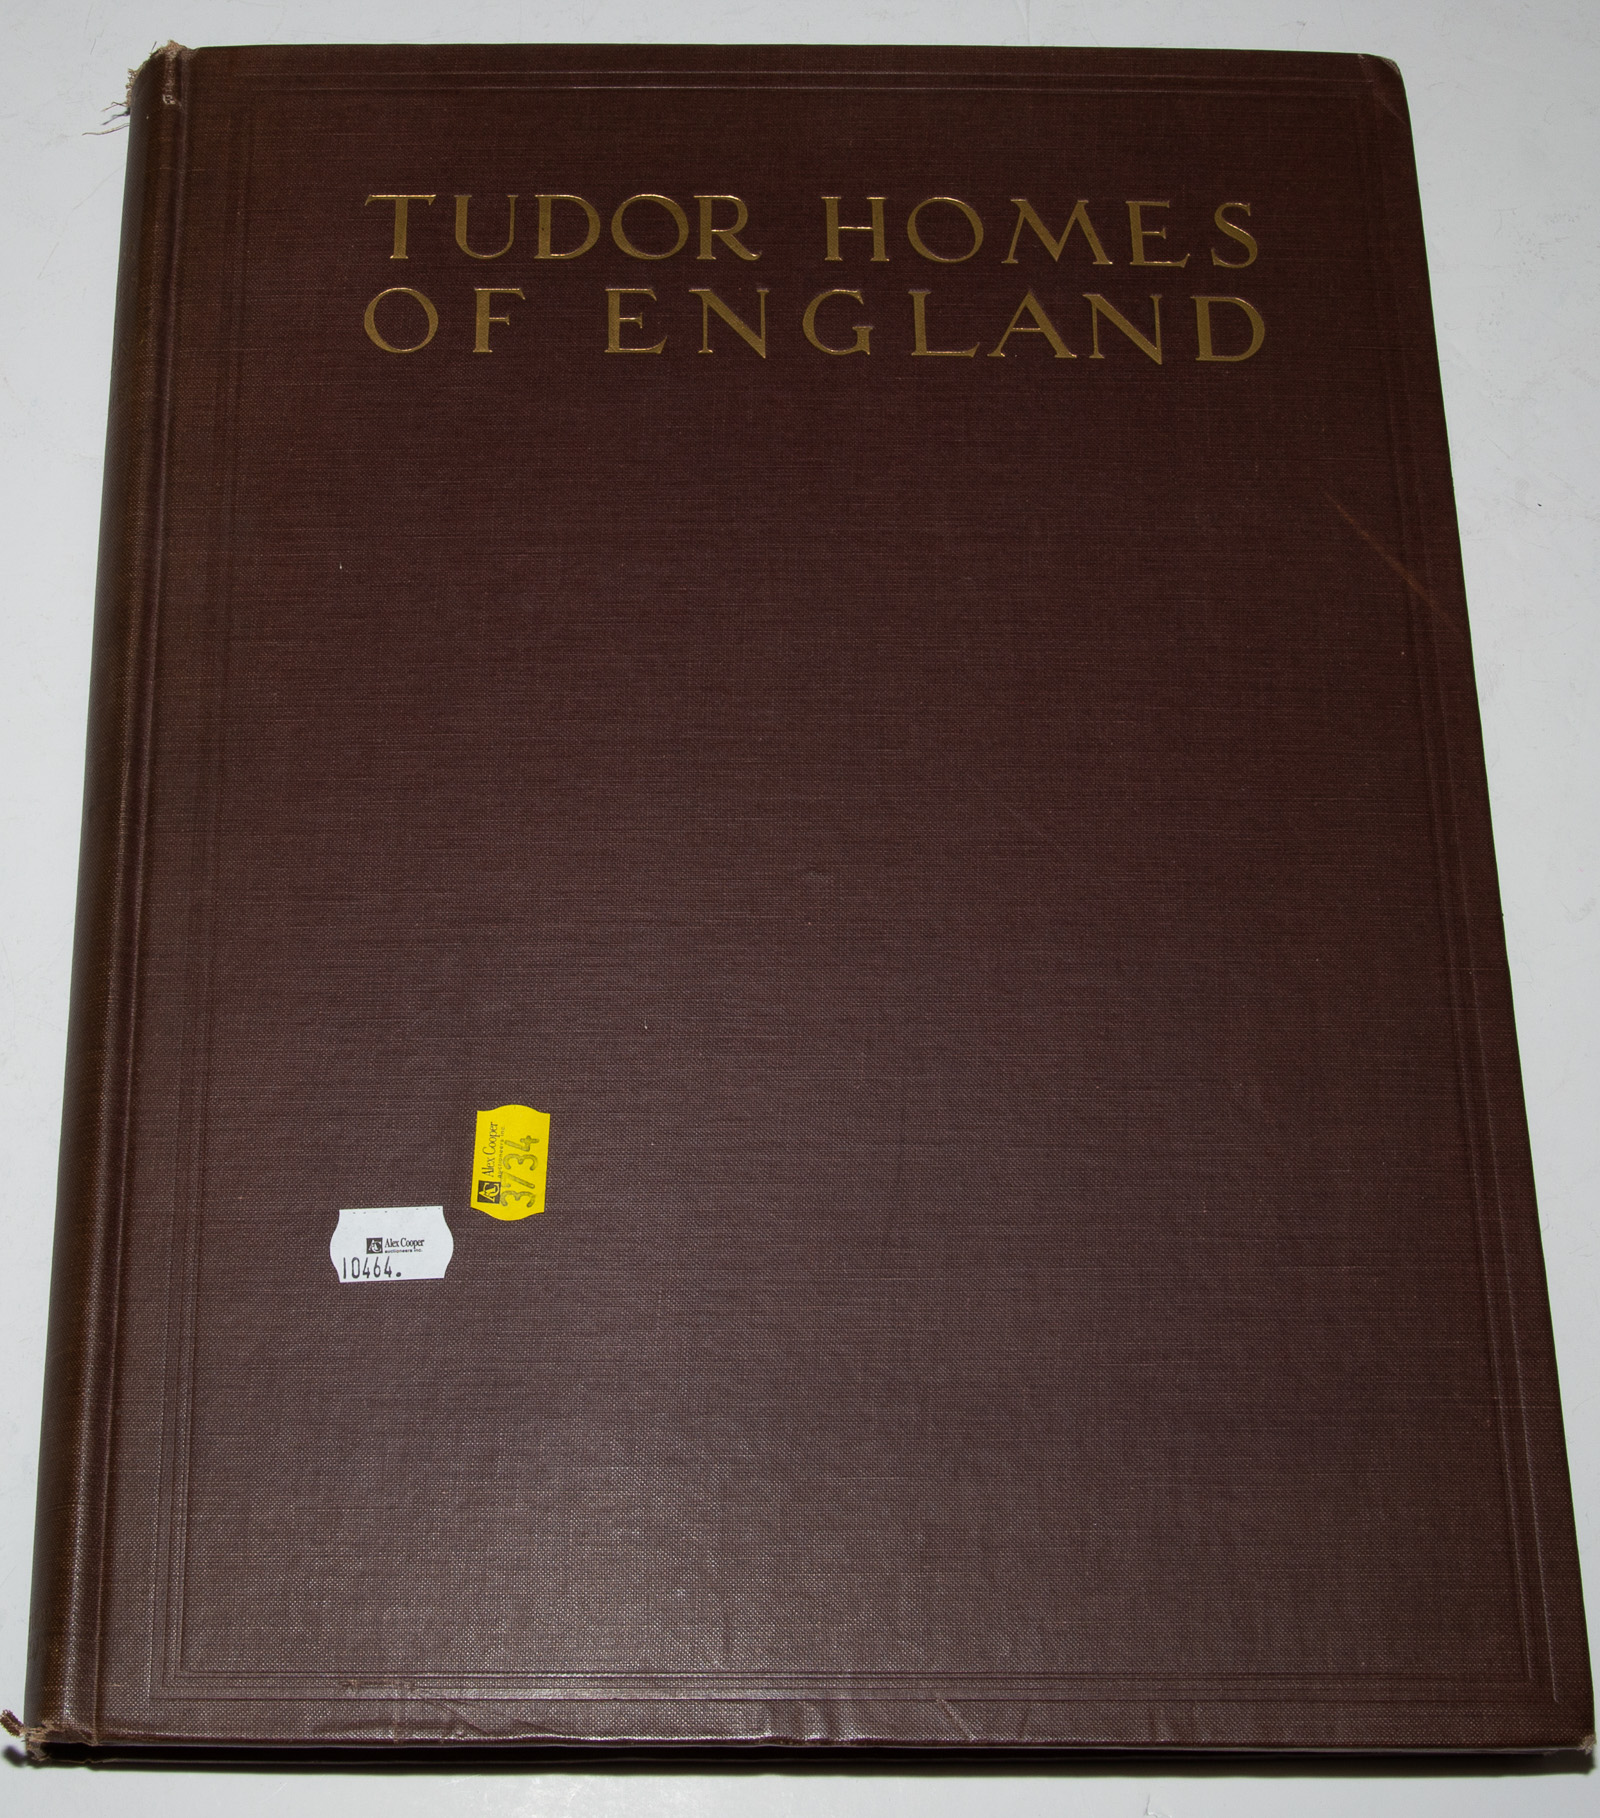 RARE BOOK ON TUDOR HOMES 1929 3384ce